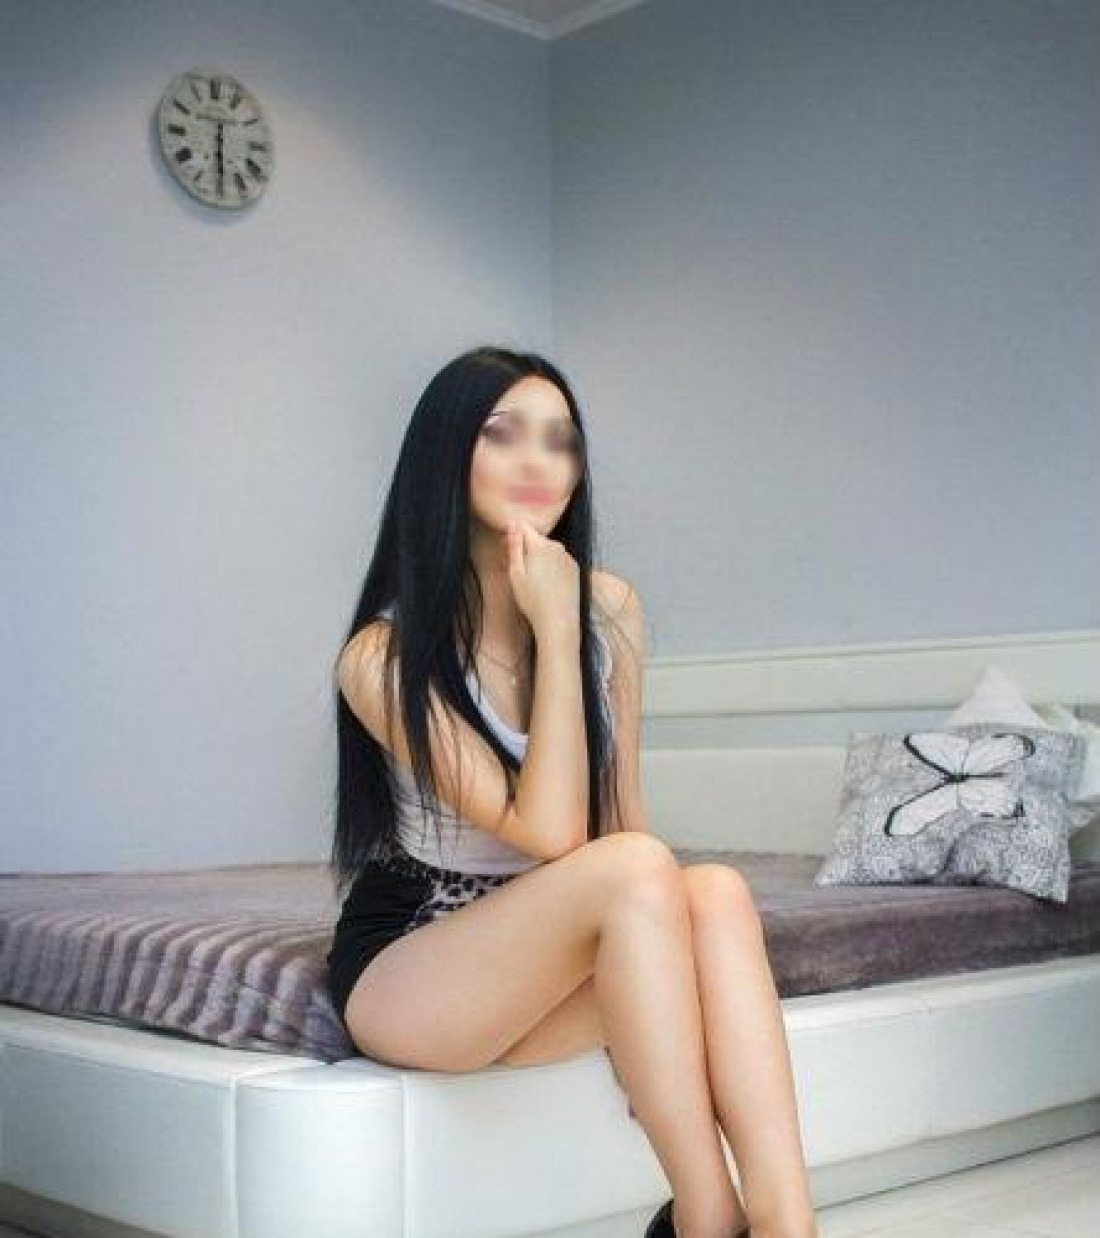 Кристина фото: проститутки индивидуалки в Казани